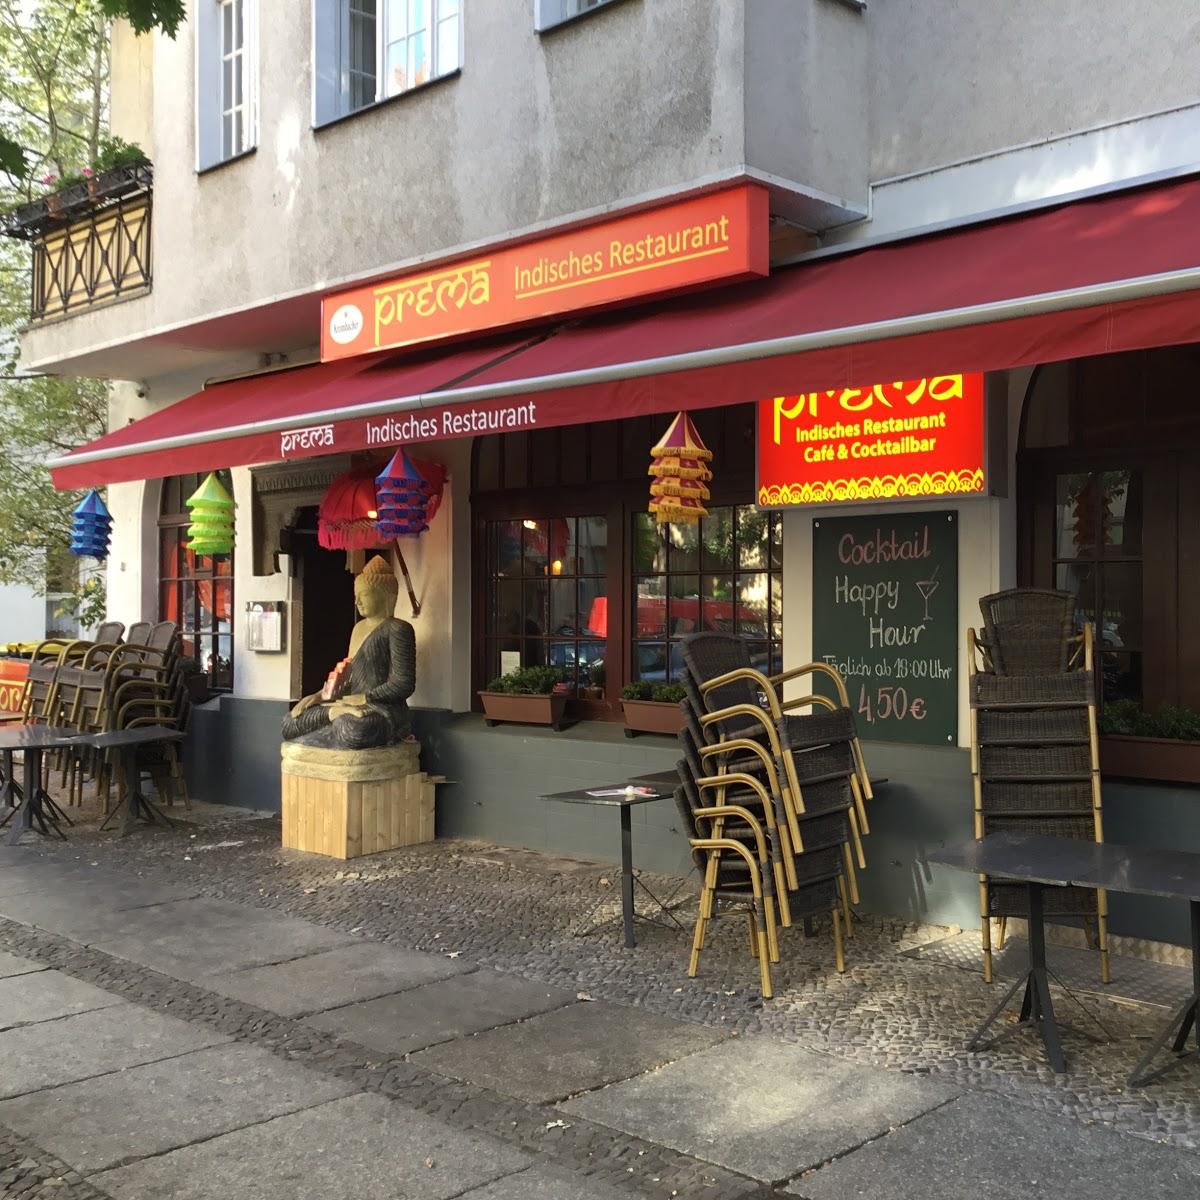 Restaurant "Prema Indisches Restaurant" in Berlin